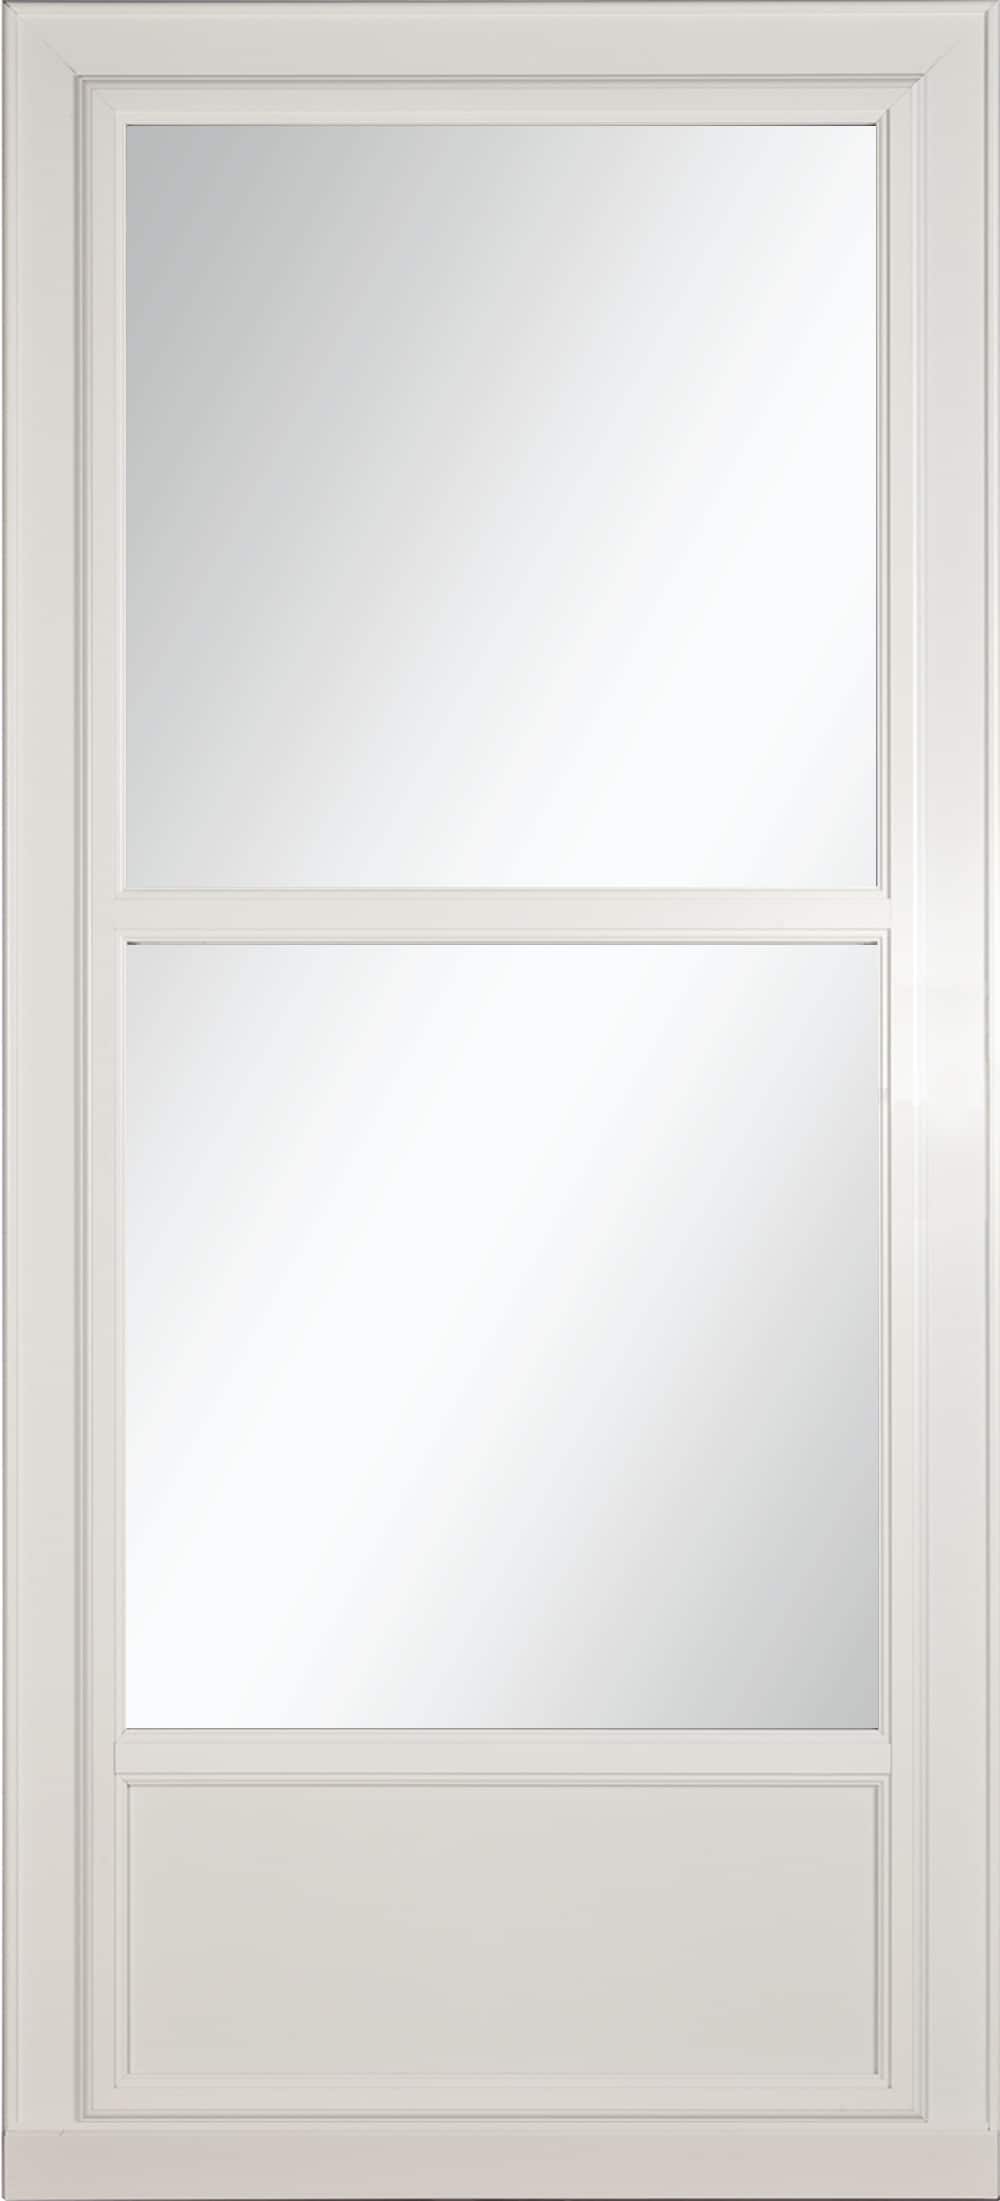 Tradewinds Selection 36-in x 81-in White Mid-view Retractable Screen Aluminum Storm Door | - LARSON 14606032